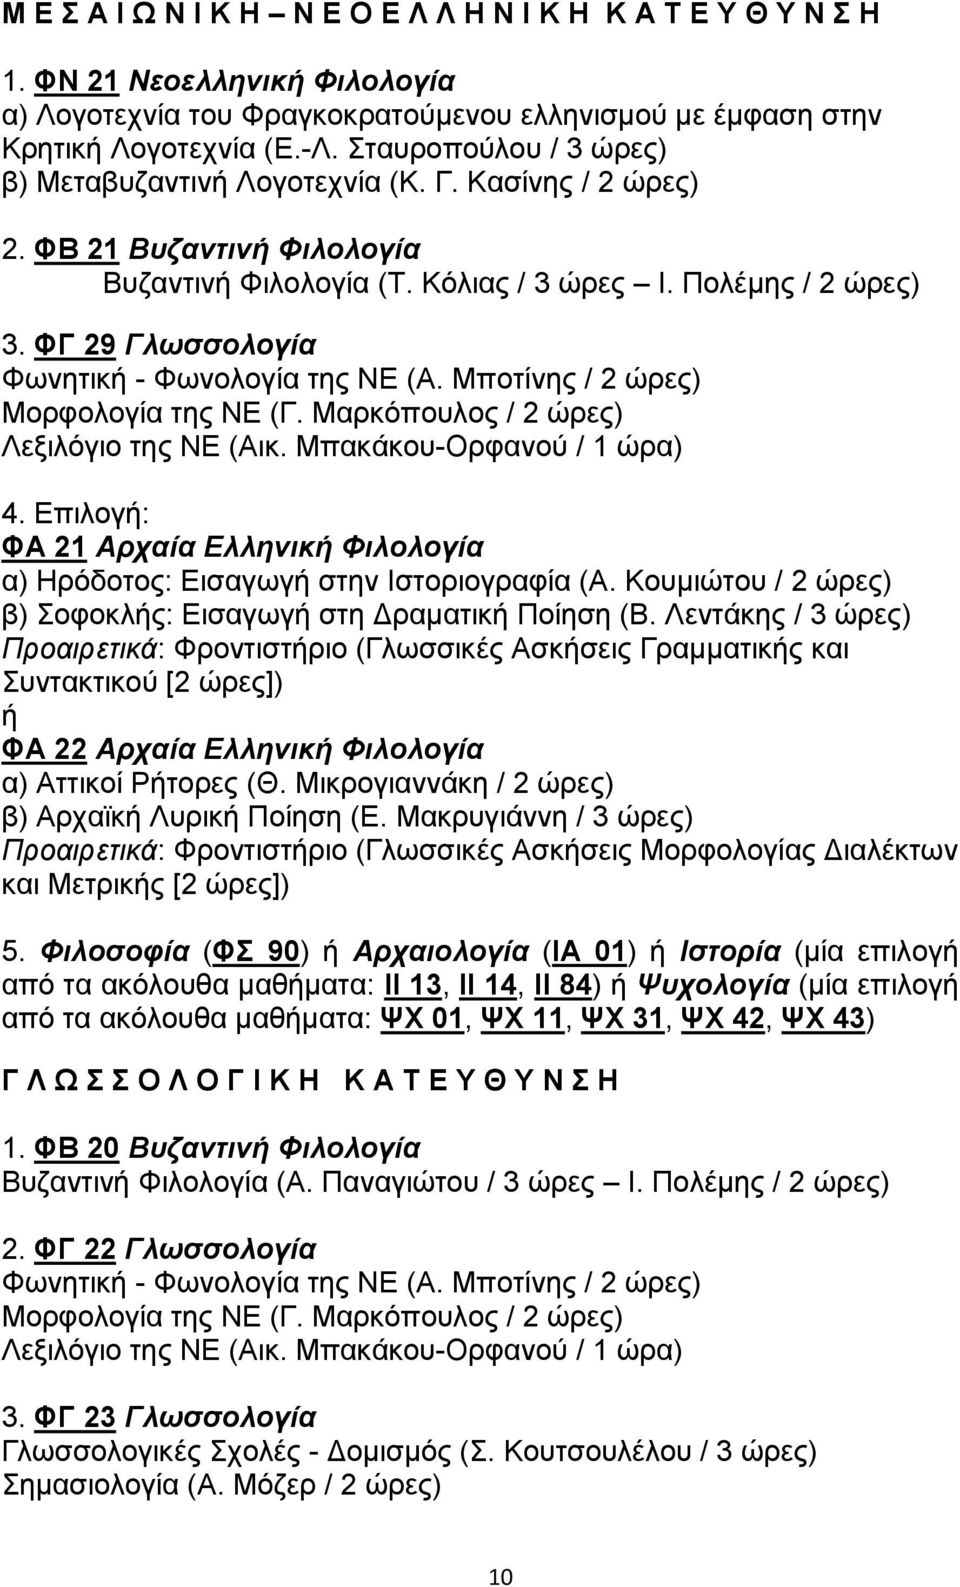 ΦΓ 29 Γλωσσολογία Φωνητική - Φωνολογία της ΝΕ (Α. Μποτίνης / 2 ώρες) Μορφολογία της ΝΕ (Γ. Μαρκόπουλος / 2 ώρες) Λεξιλόγιο της ΝΕ (Αικ. Μπακάκου-Ορφανού / 1 ώρα) 4.